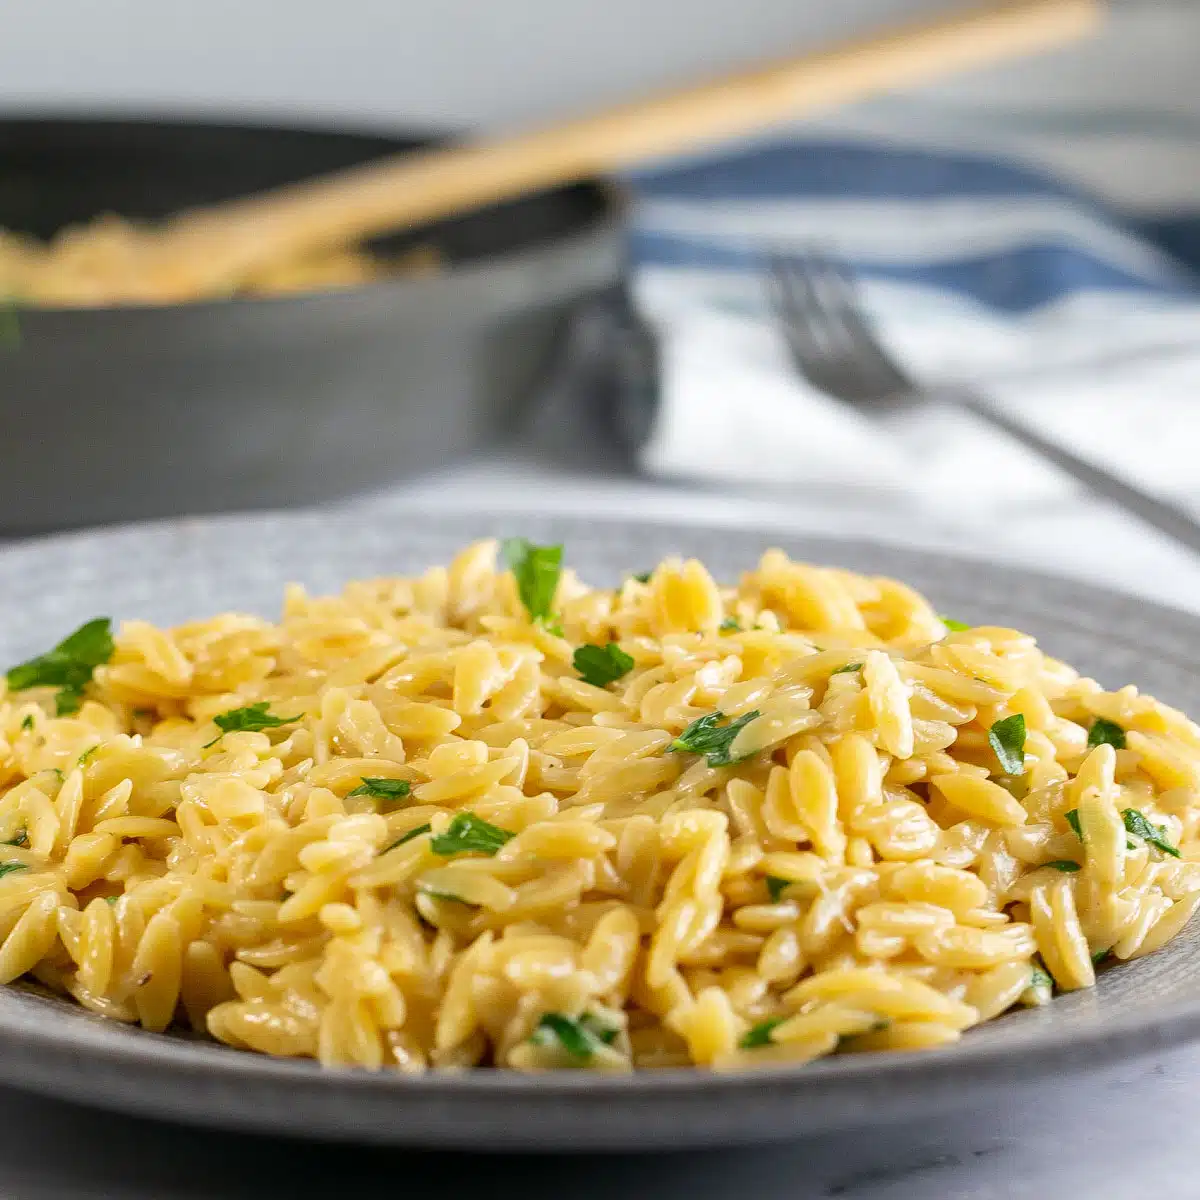 Bedste parmesan orzo pasta tilbehør serveret på grå tallerken med frisk hakket persille.